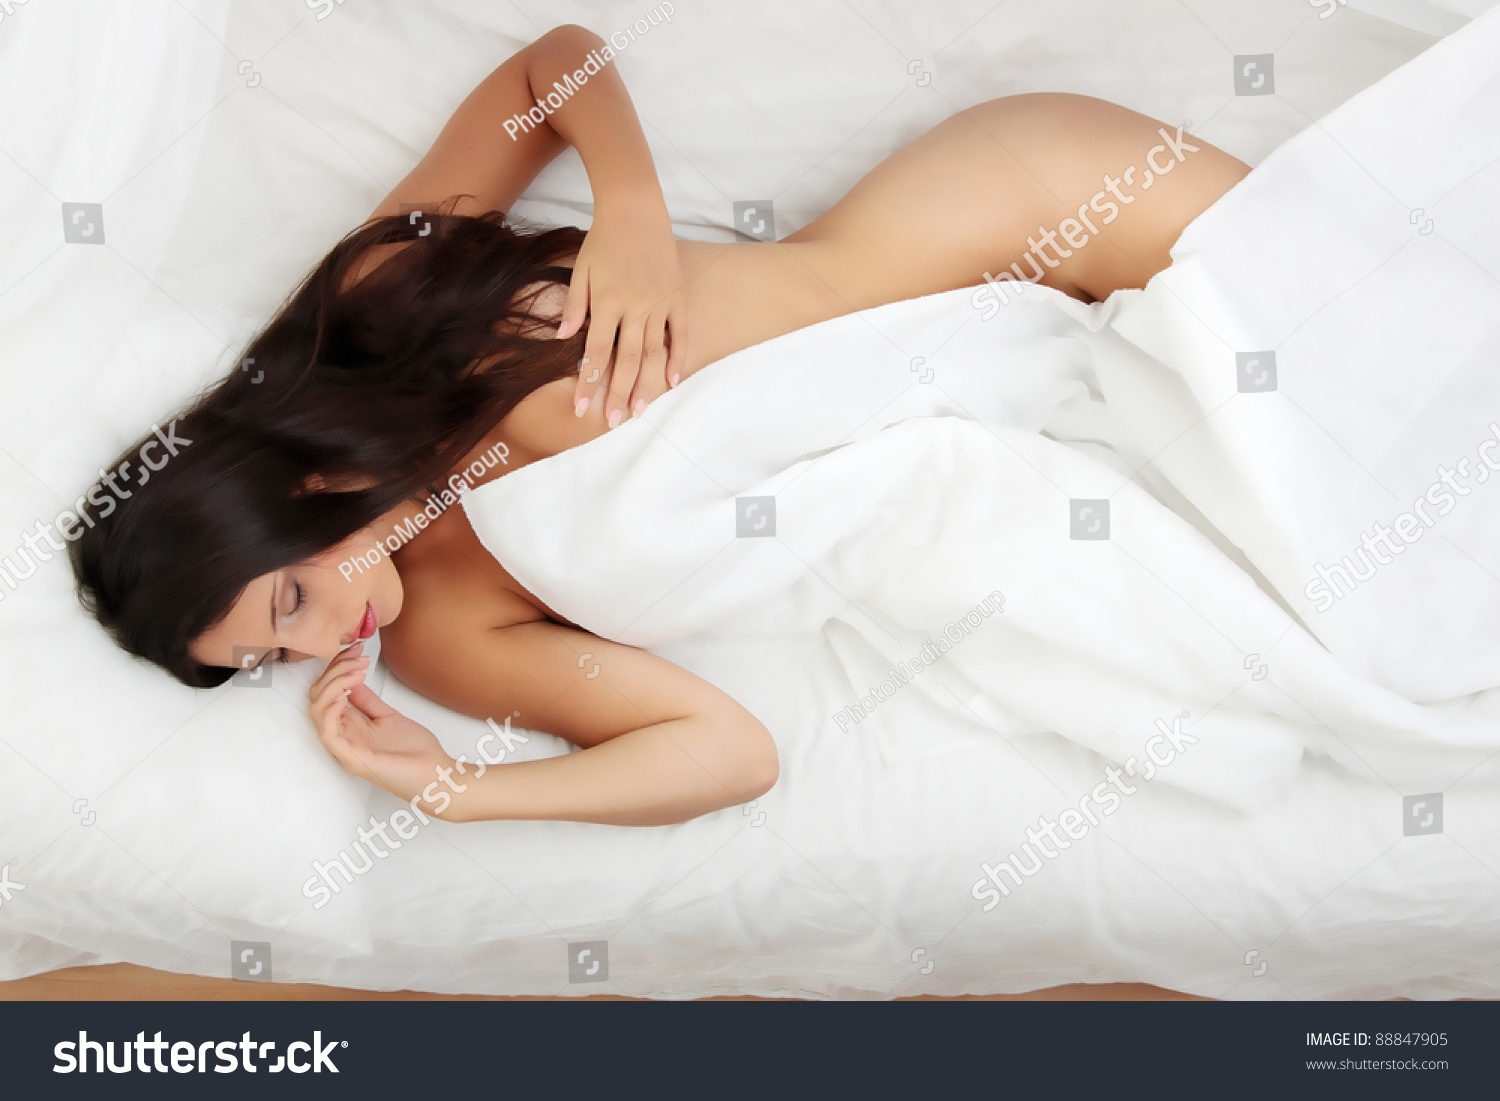 Русоволосая подруга валяется голой в постели утром